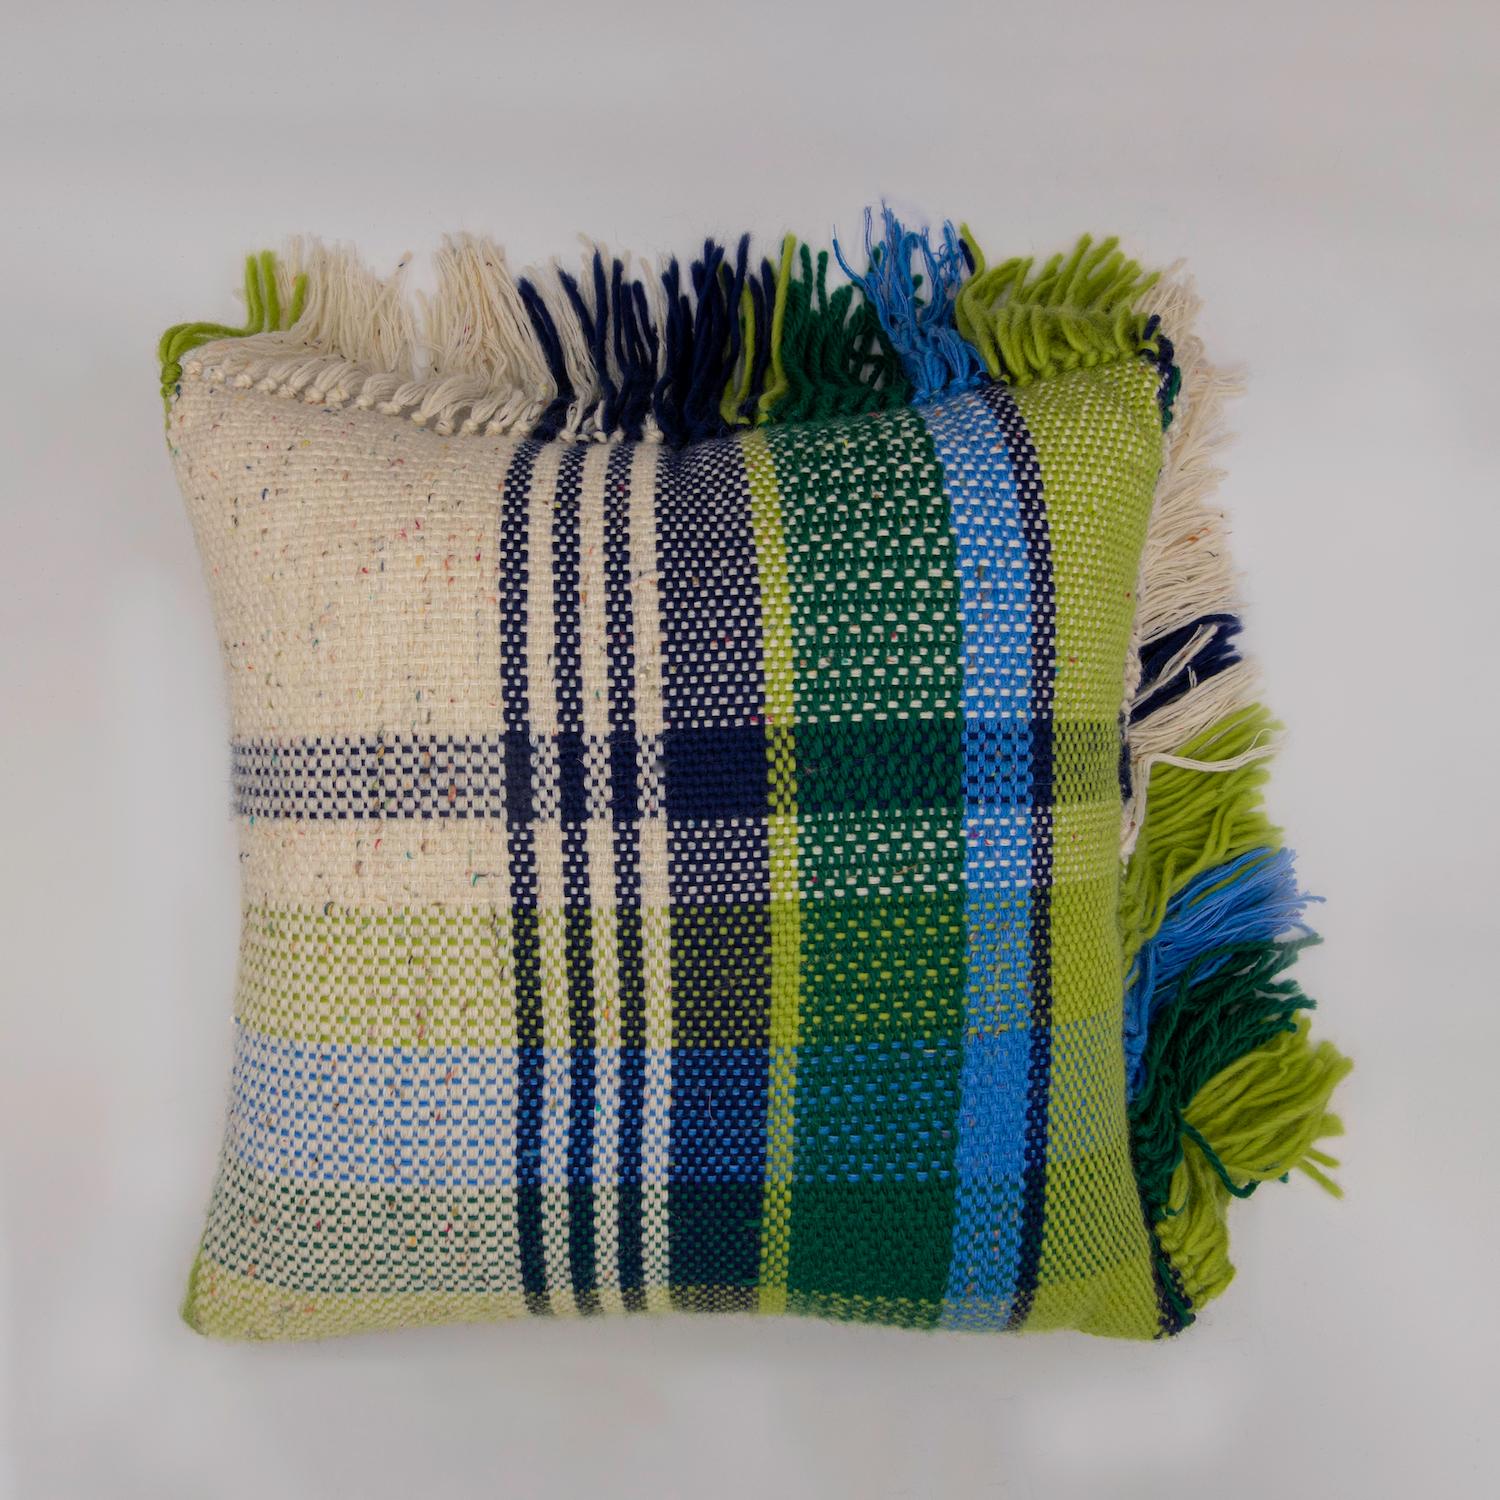 Tissé à la main en Toscane avec de la laine de Sardaigne, chaque coussin nécessite plus de deux jours de travail pour un artisan. Chaque face du coussin présente une variation du motif écossais caractéristique dans une alternance de couleurs.